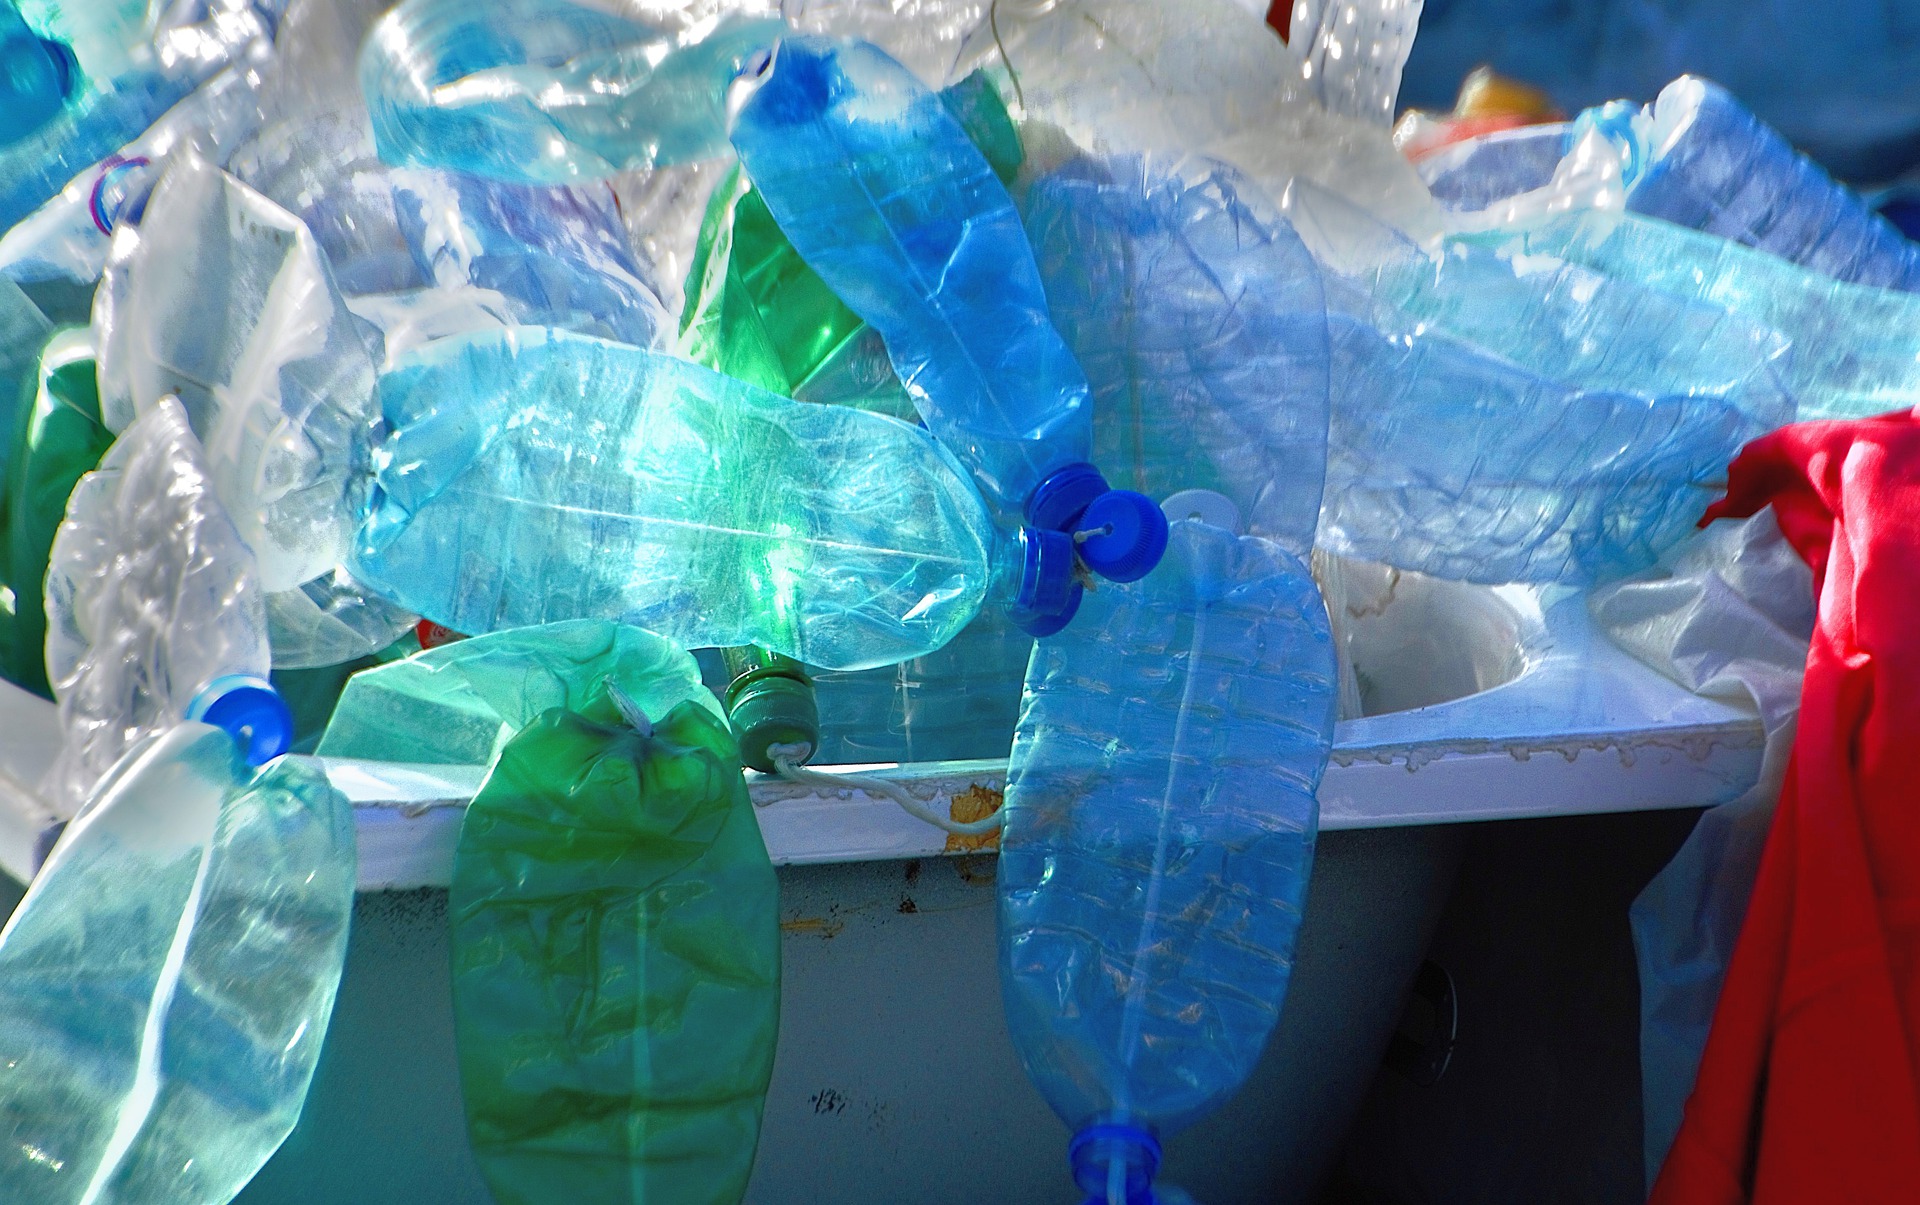 plastic bottles in a trash bin. What a waste!